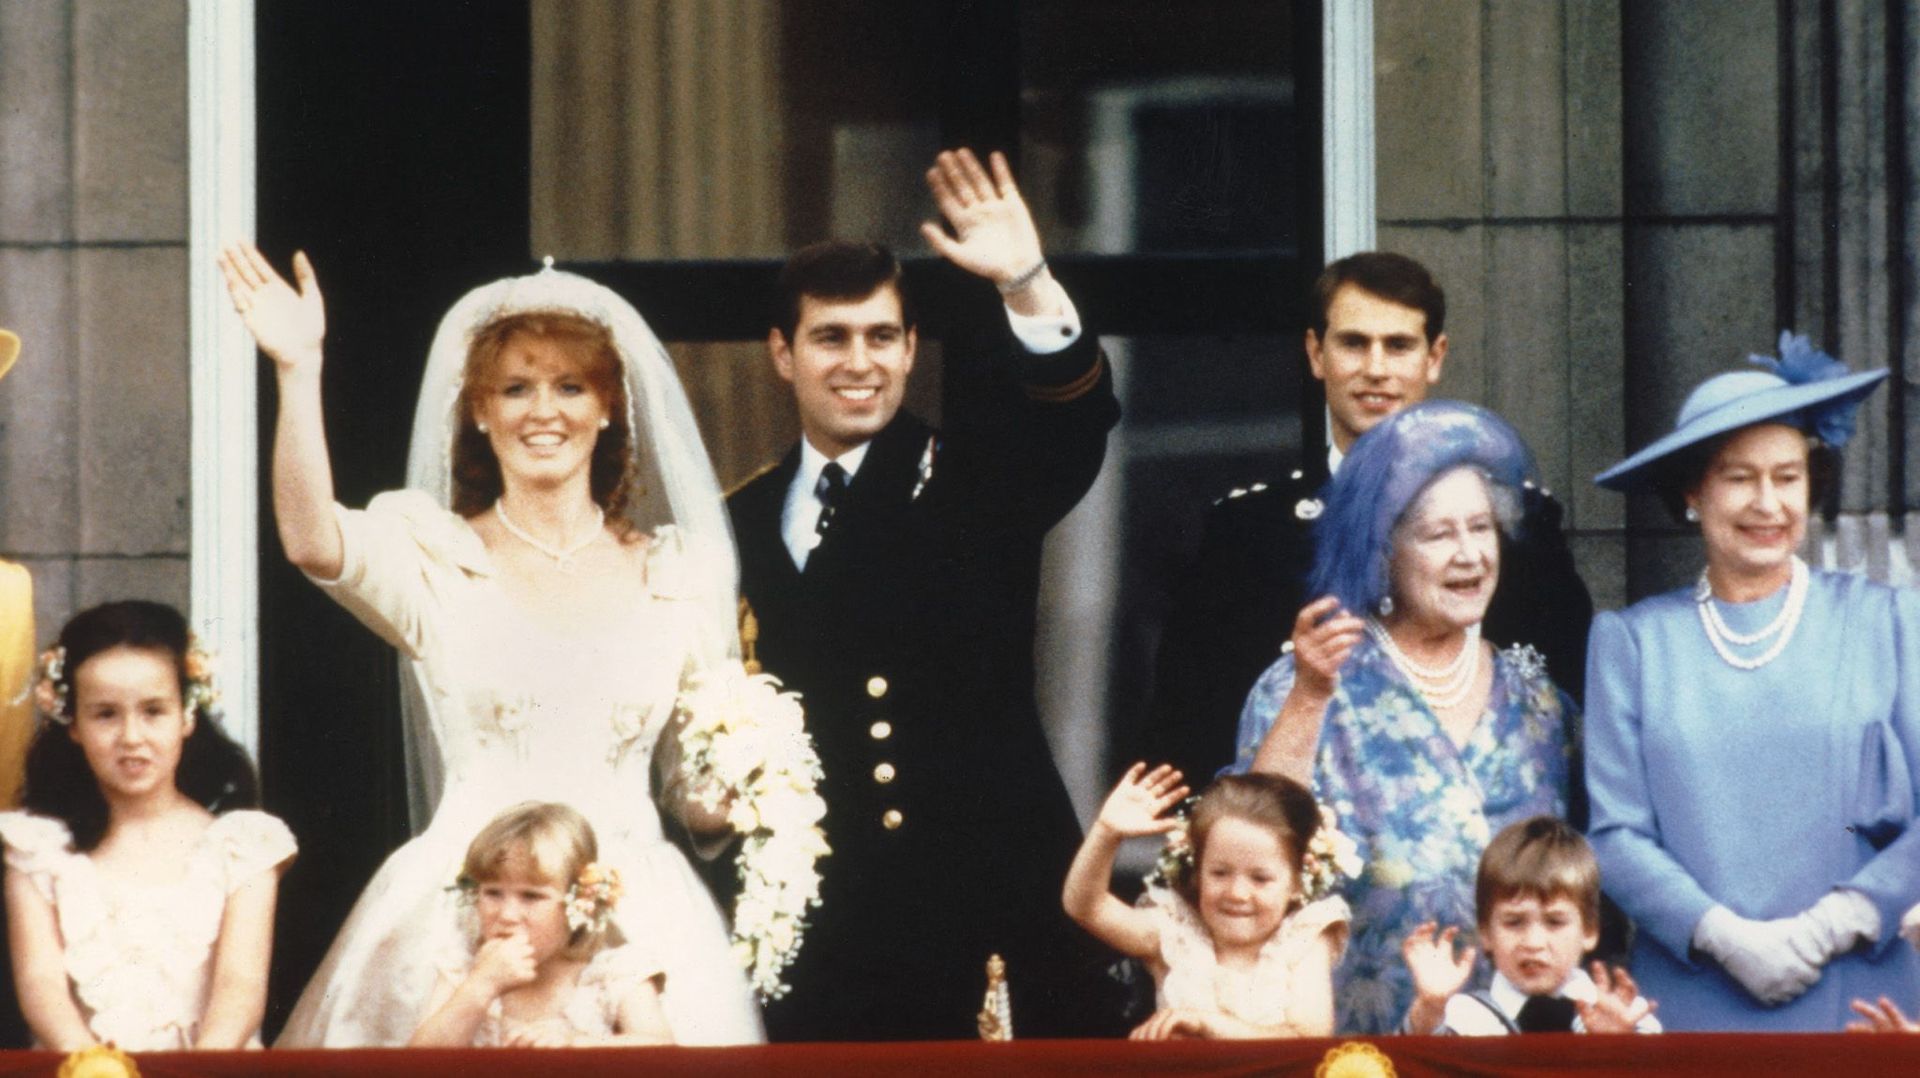 Le mariage du prince Andrew et de Sarah Ferguson en 1986